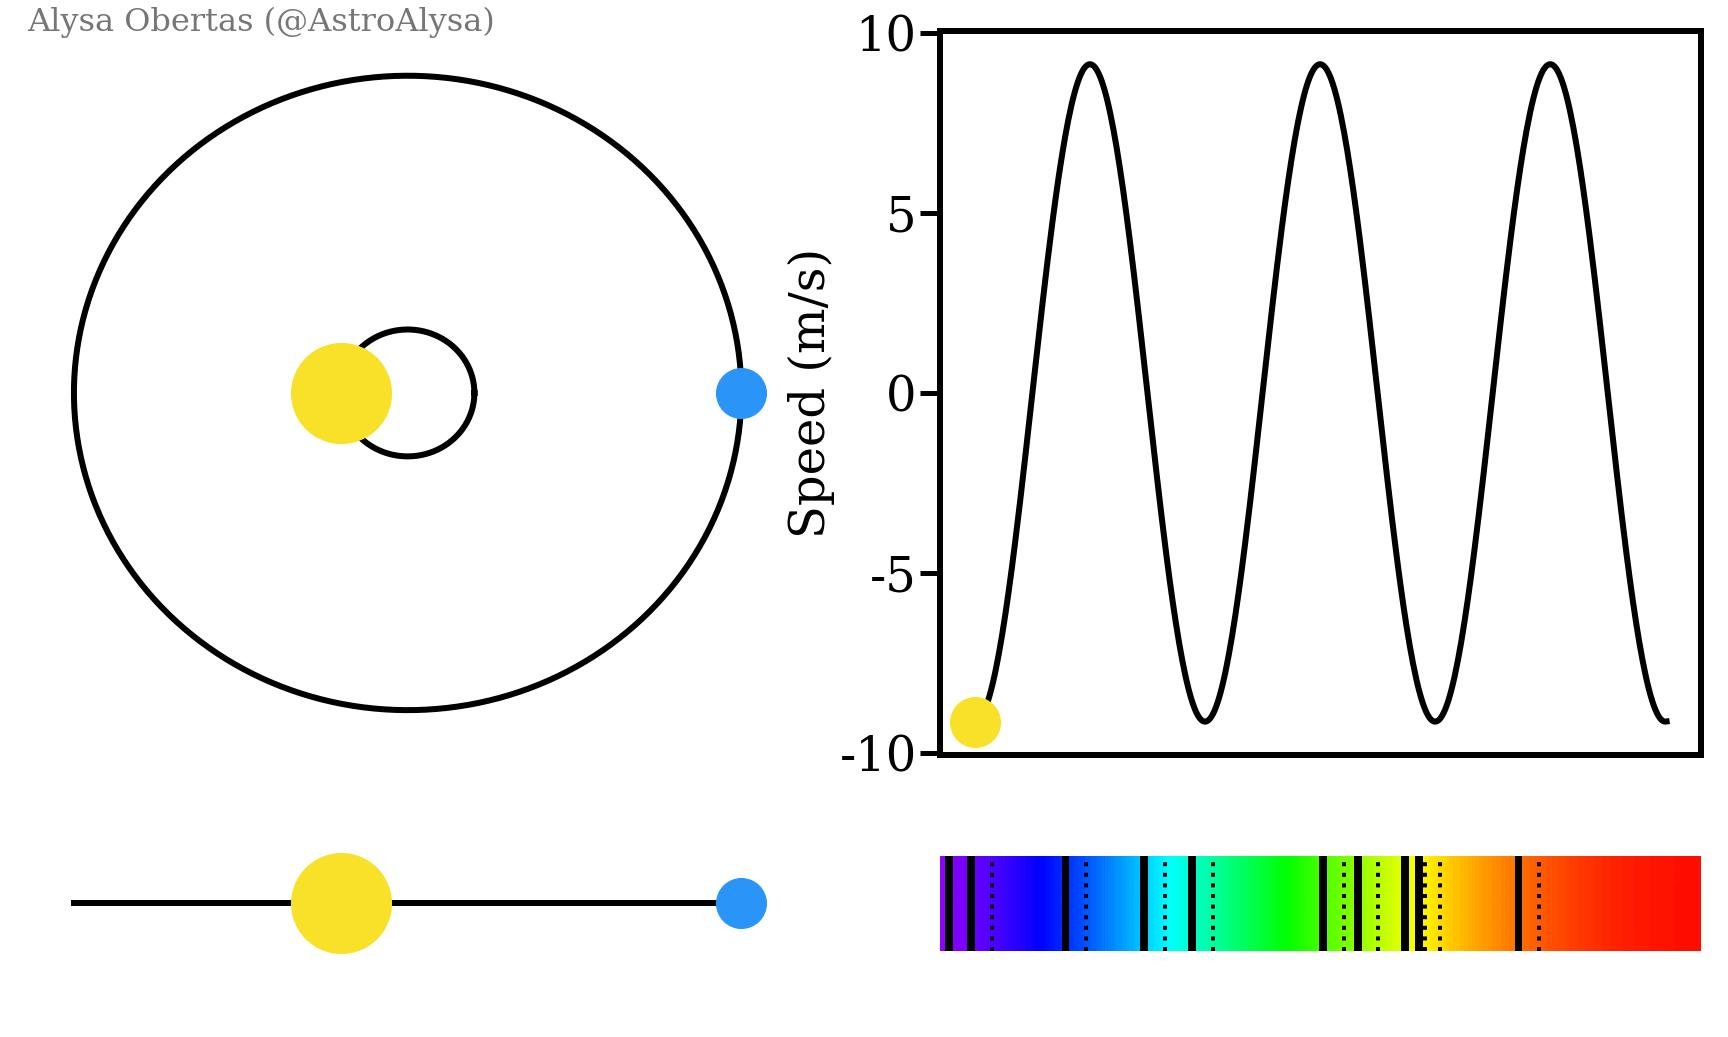 Ilustração do método de velocidade radial para detecção de exoplanetas